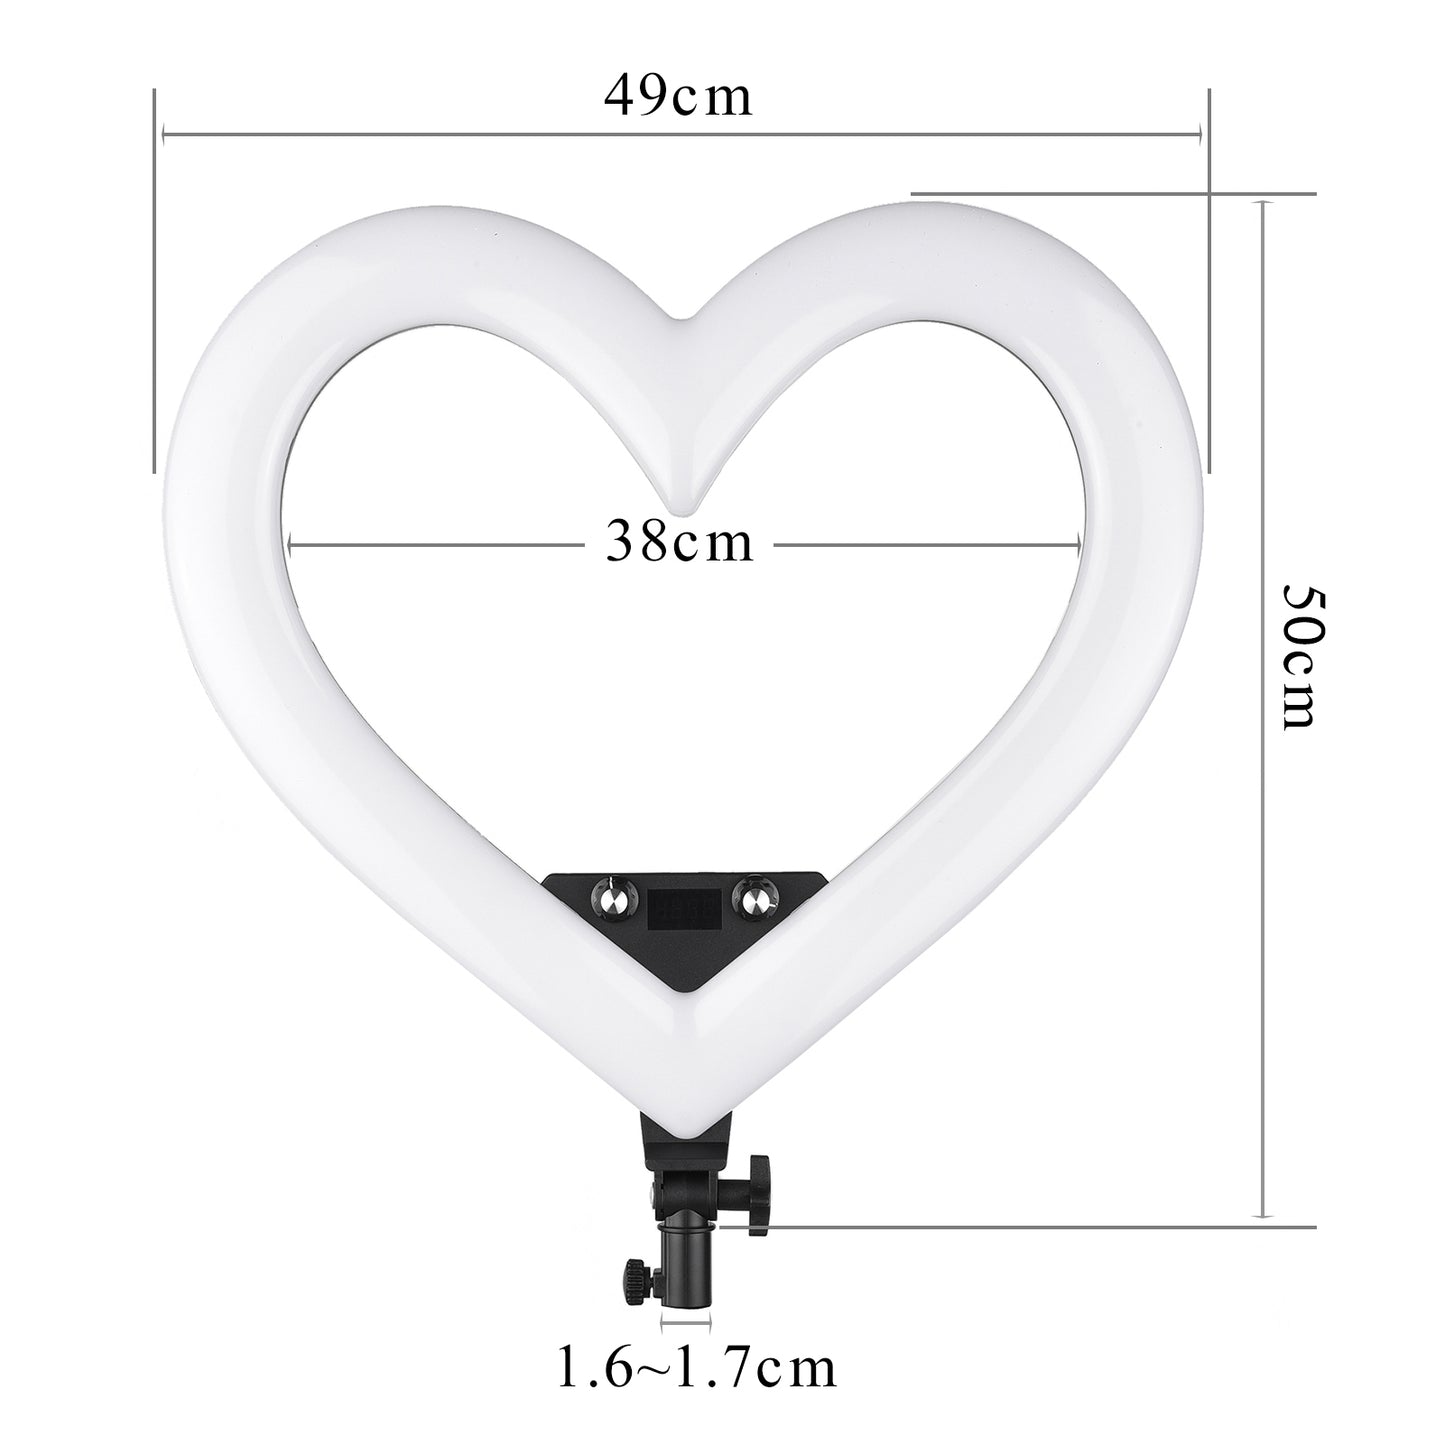 Herzförmiges Ringlicht mit verstellbarem Stativ, verschiedenen Farben und 3 Handyhalterungen